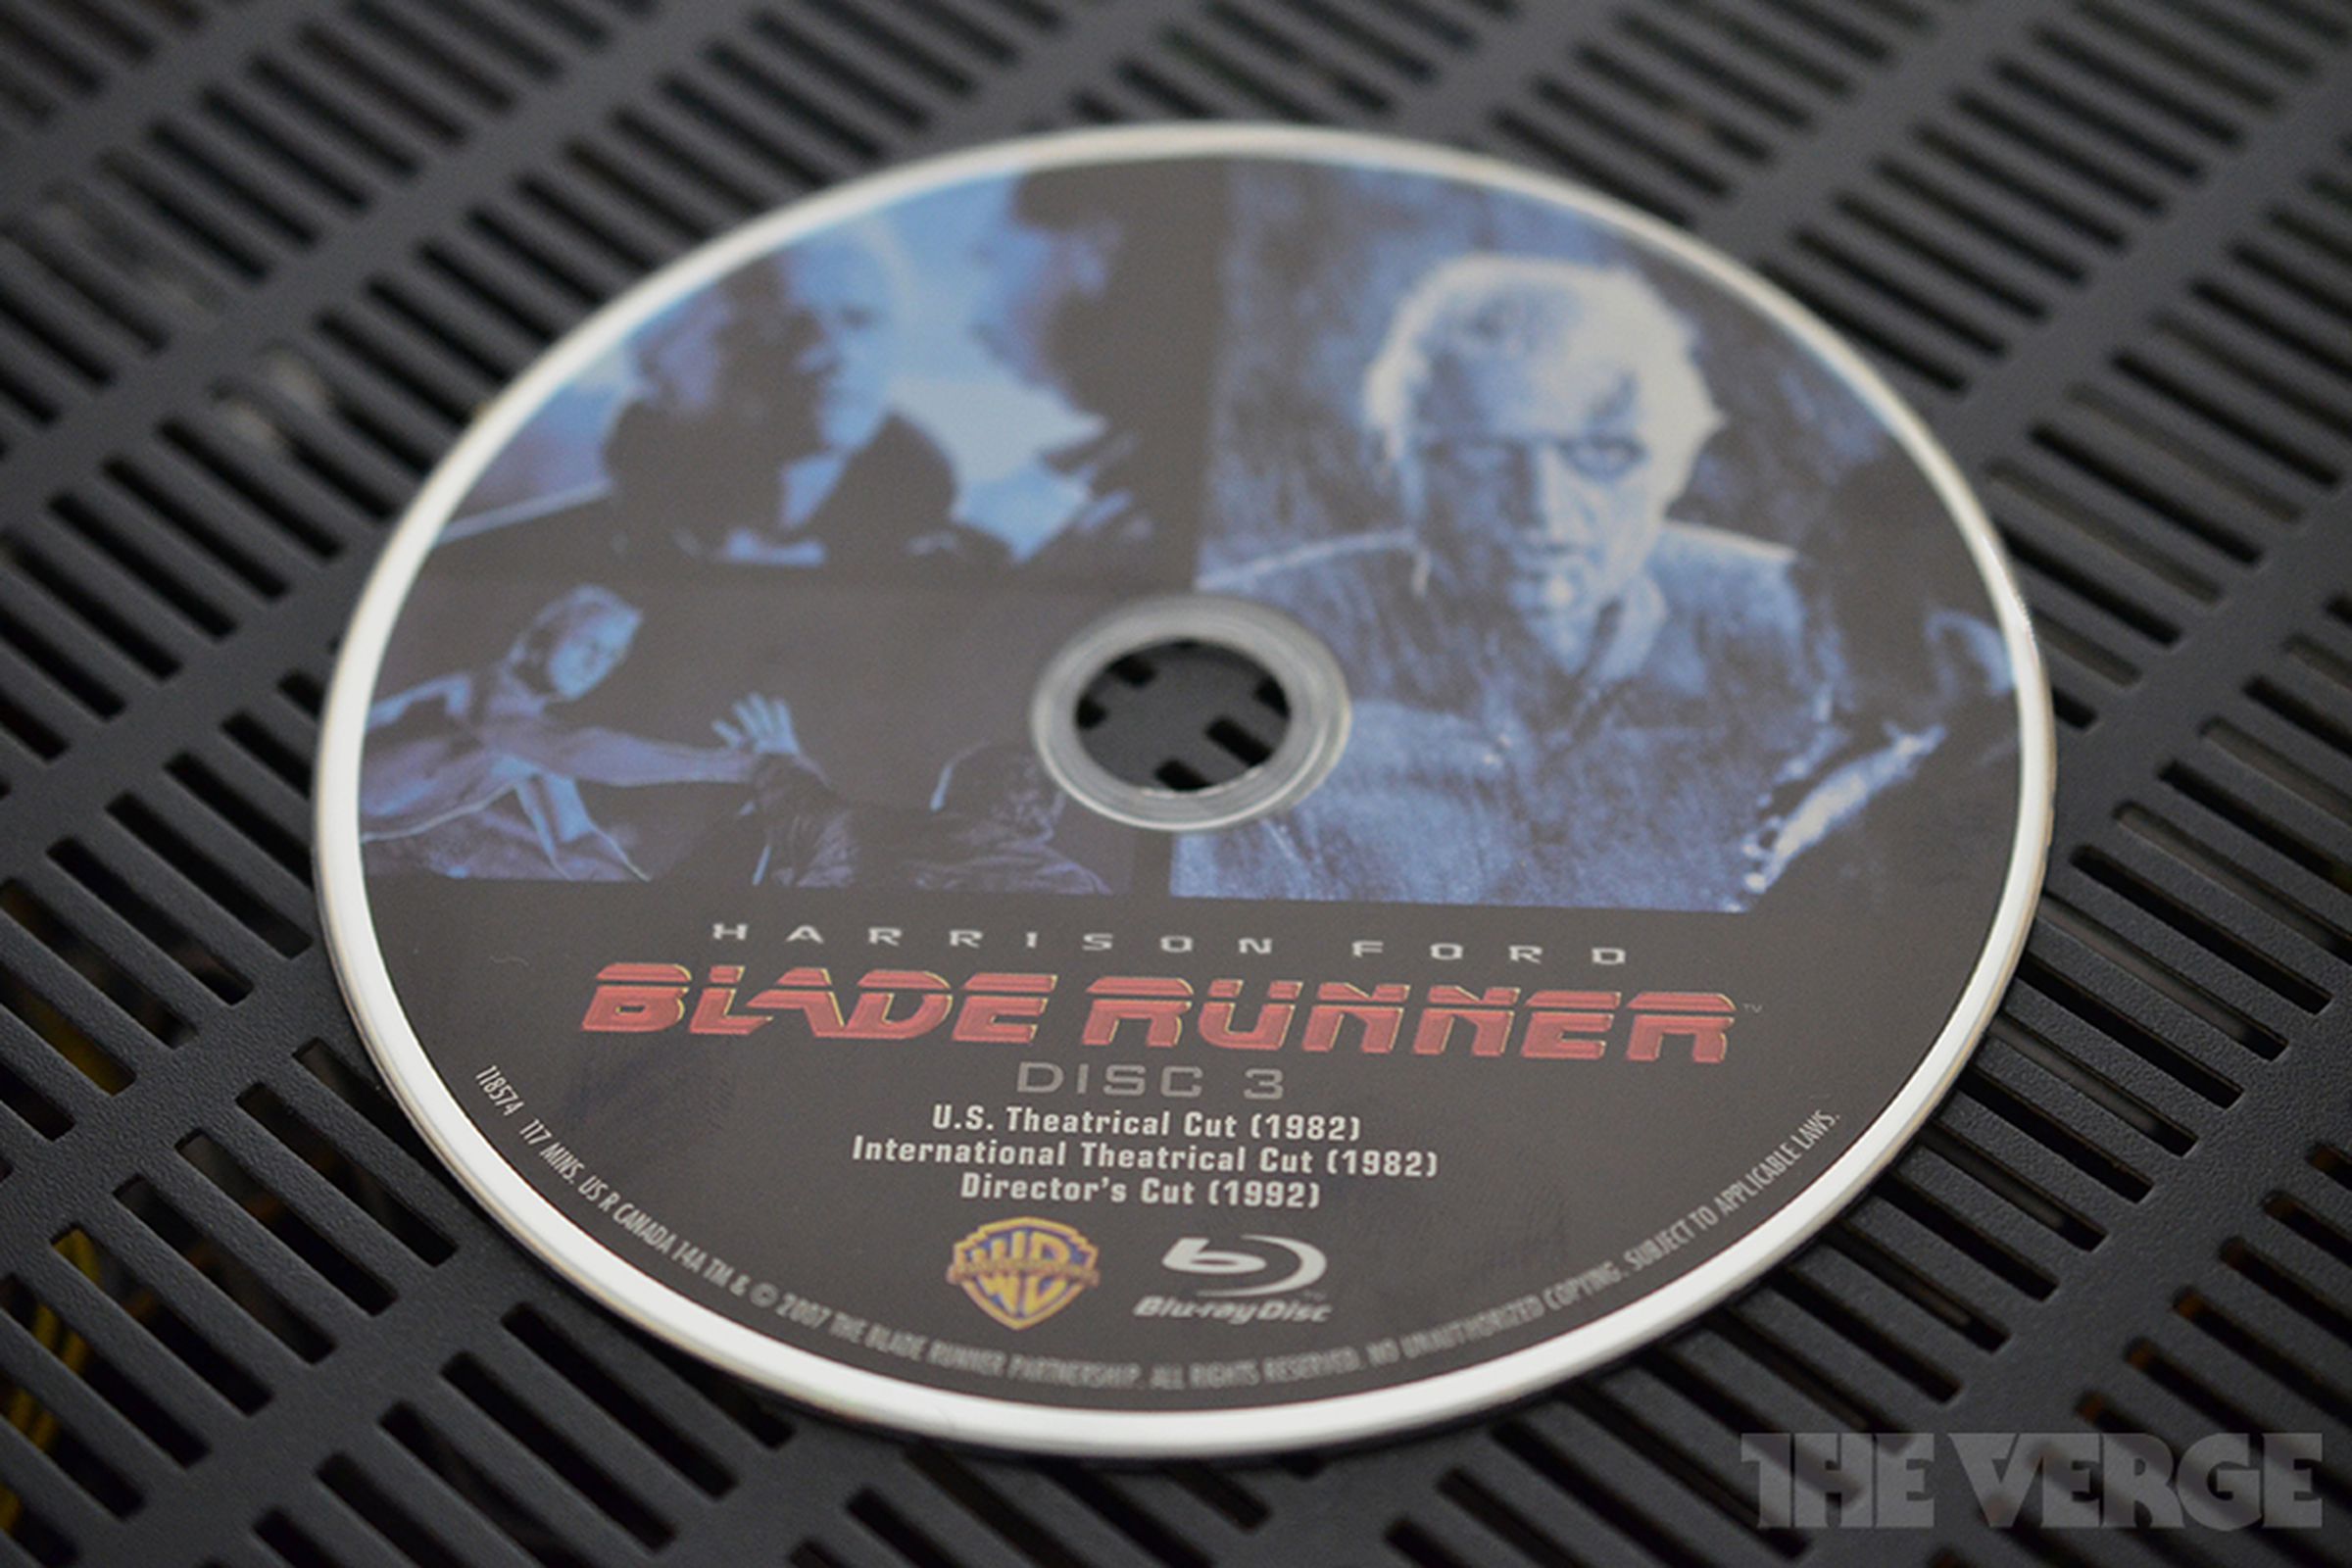 Blade Runner DVD